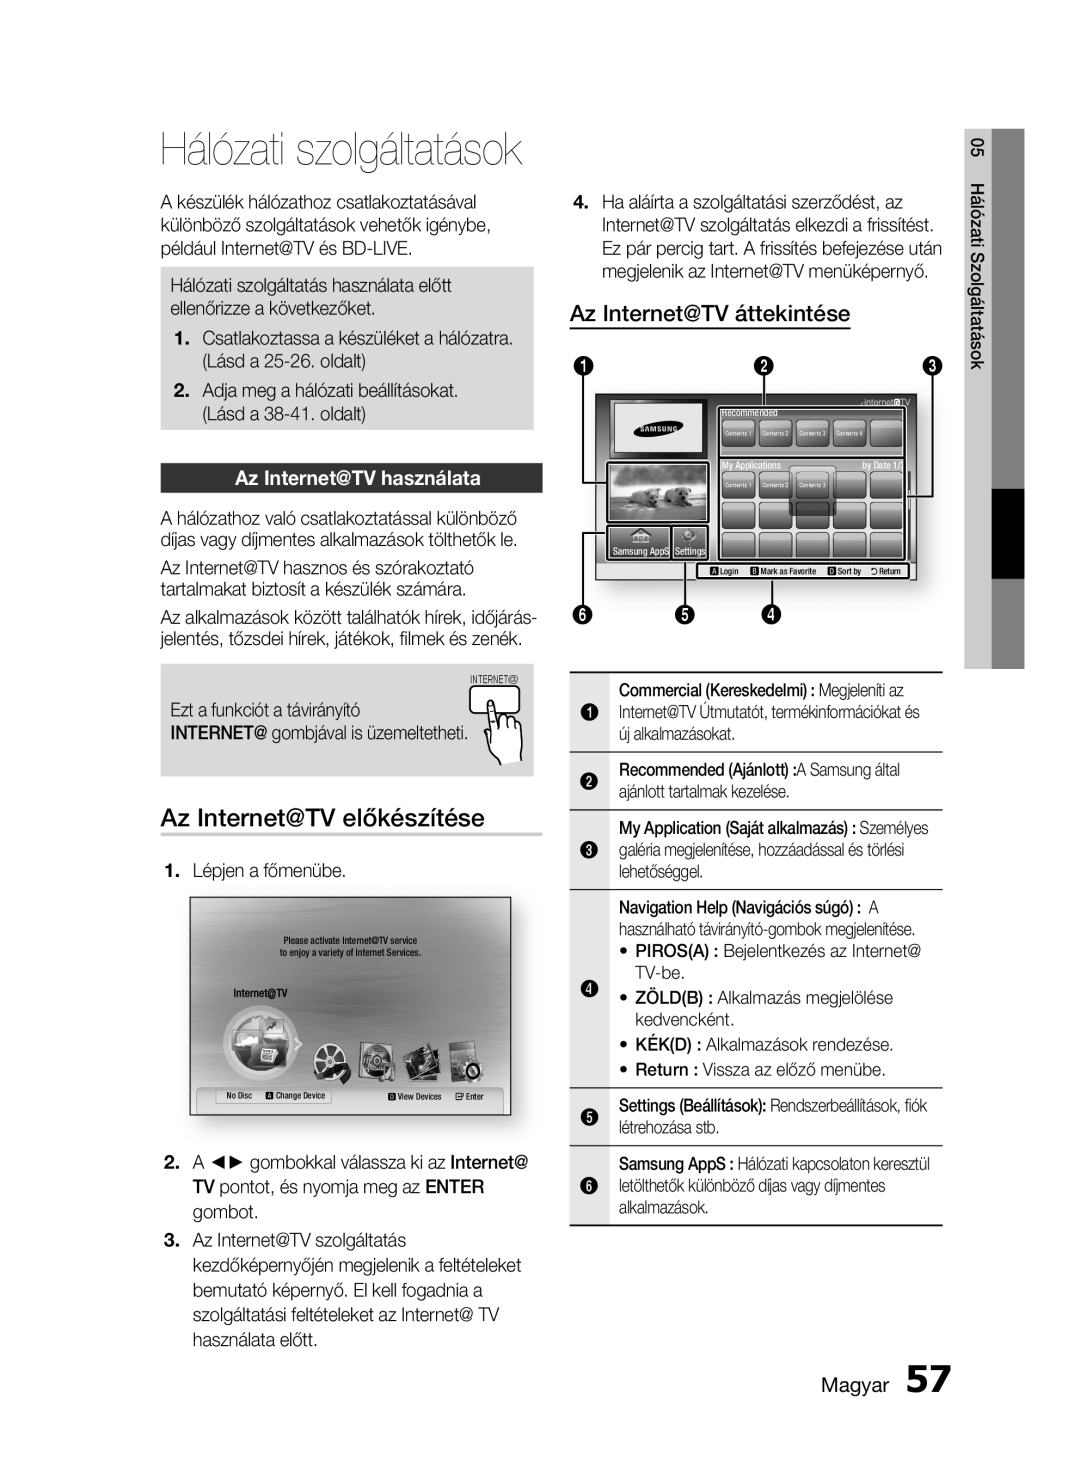 Samsung HT-C5900/XEE manual Hálózati szolgáltatások, Az Internet@TV előkészítése, Az Internet@TV áttekintése, Magyar 